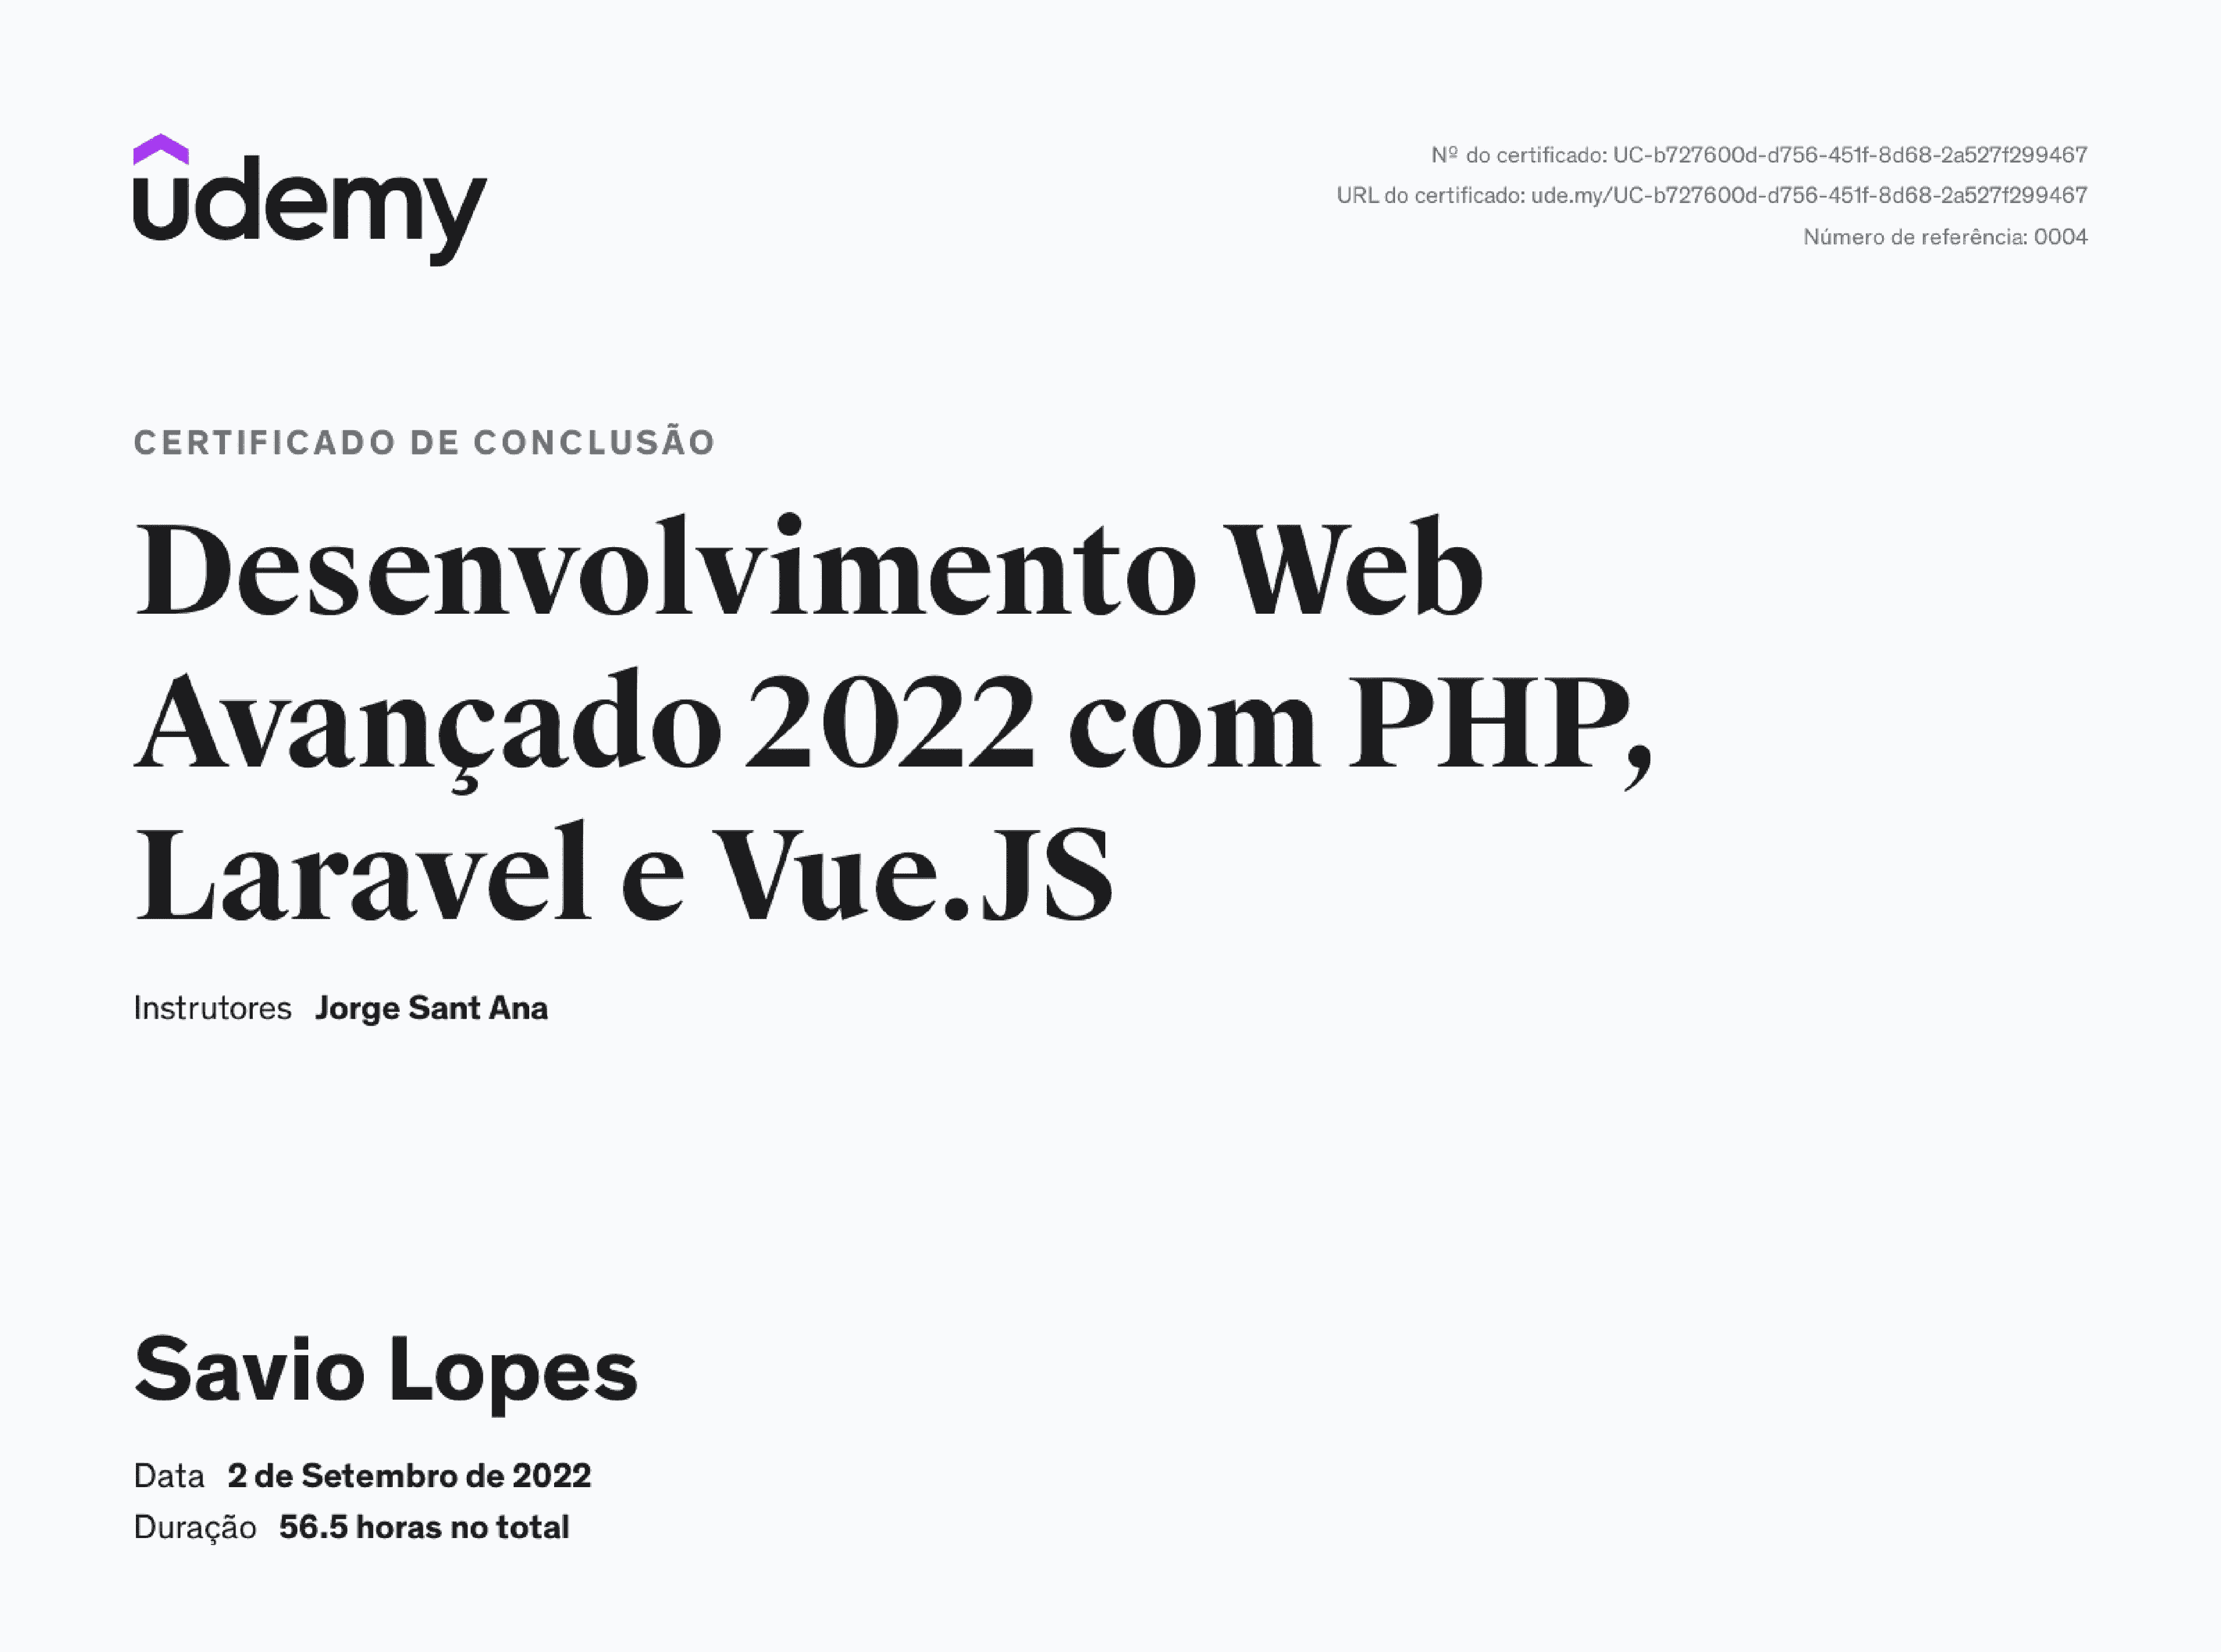 Desenvolvimento Web Avançado 2022 com Laravel e Vue.js (Udemy)